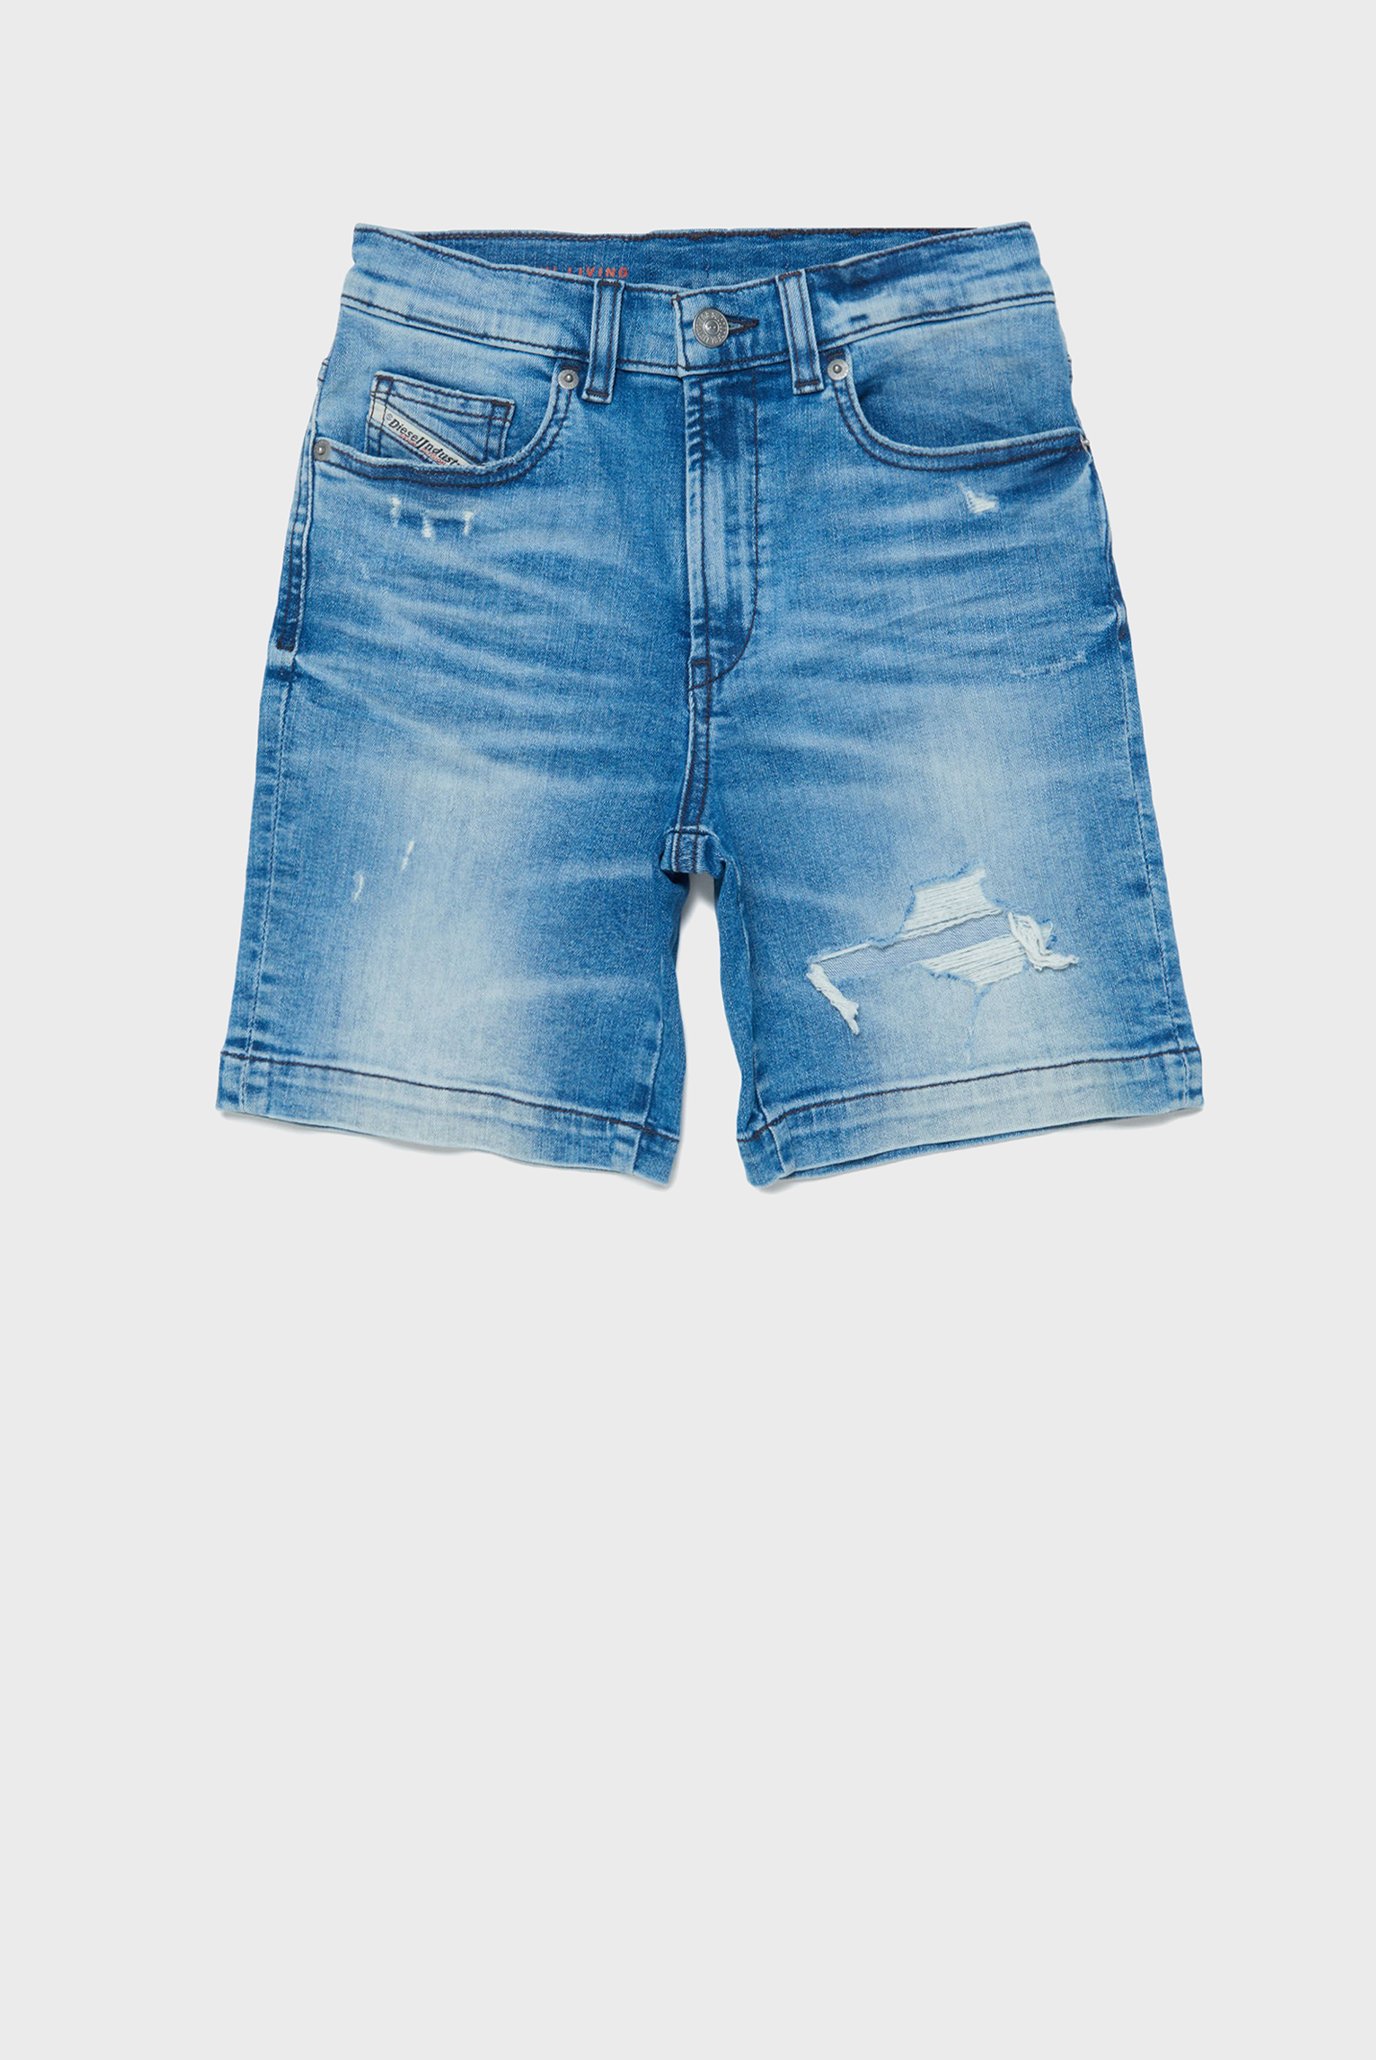 Детские синие джинсовые шорты D-MACS-SH-J SHORTS 1